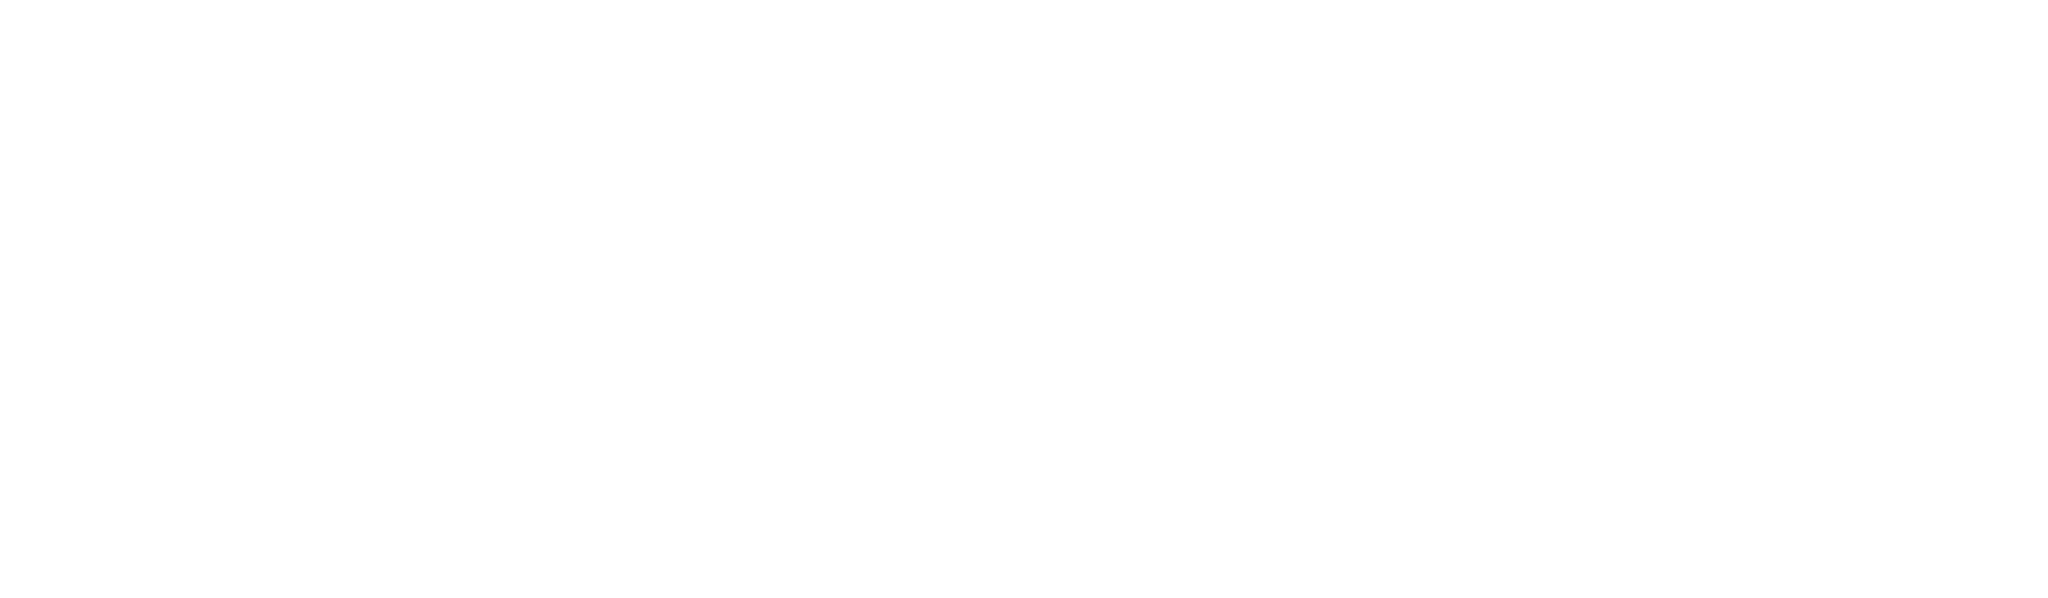 Symphony of the Americas transparent logo